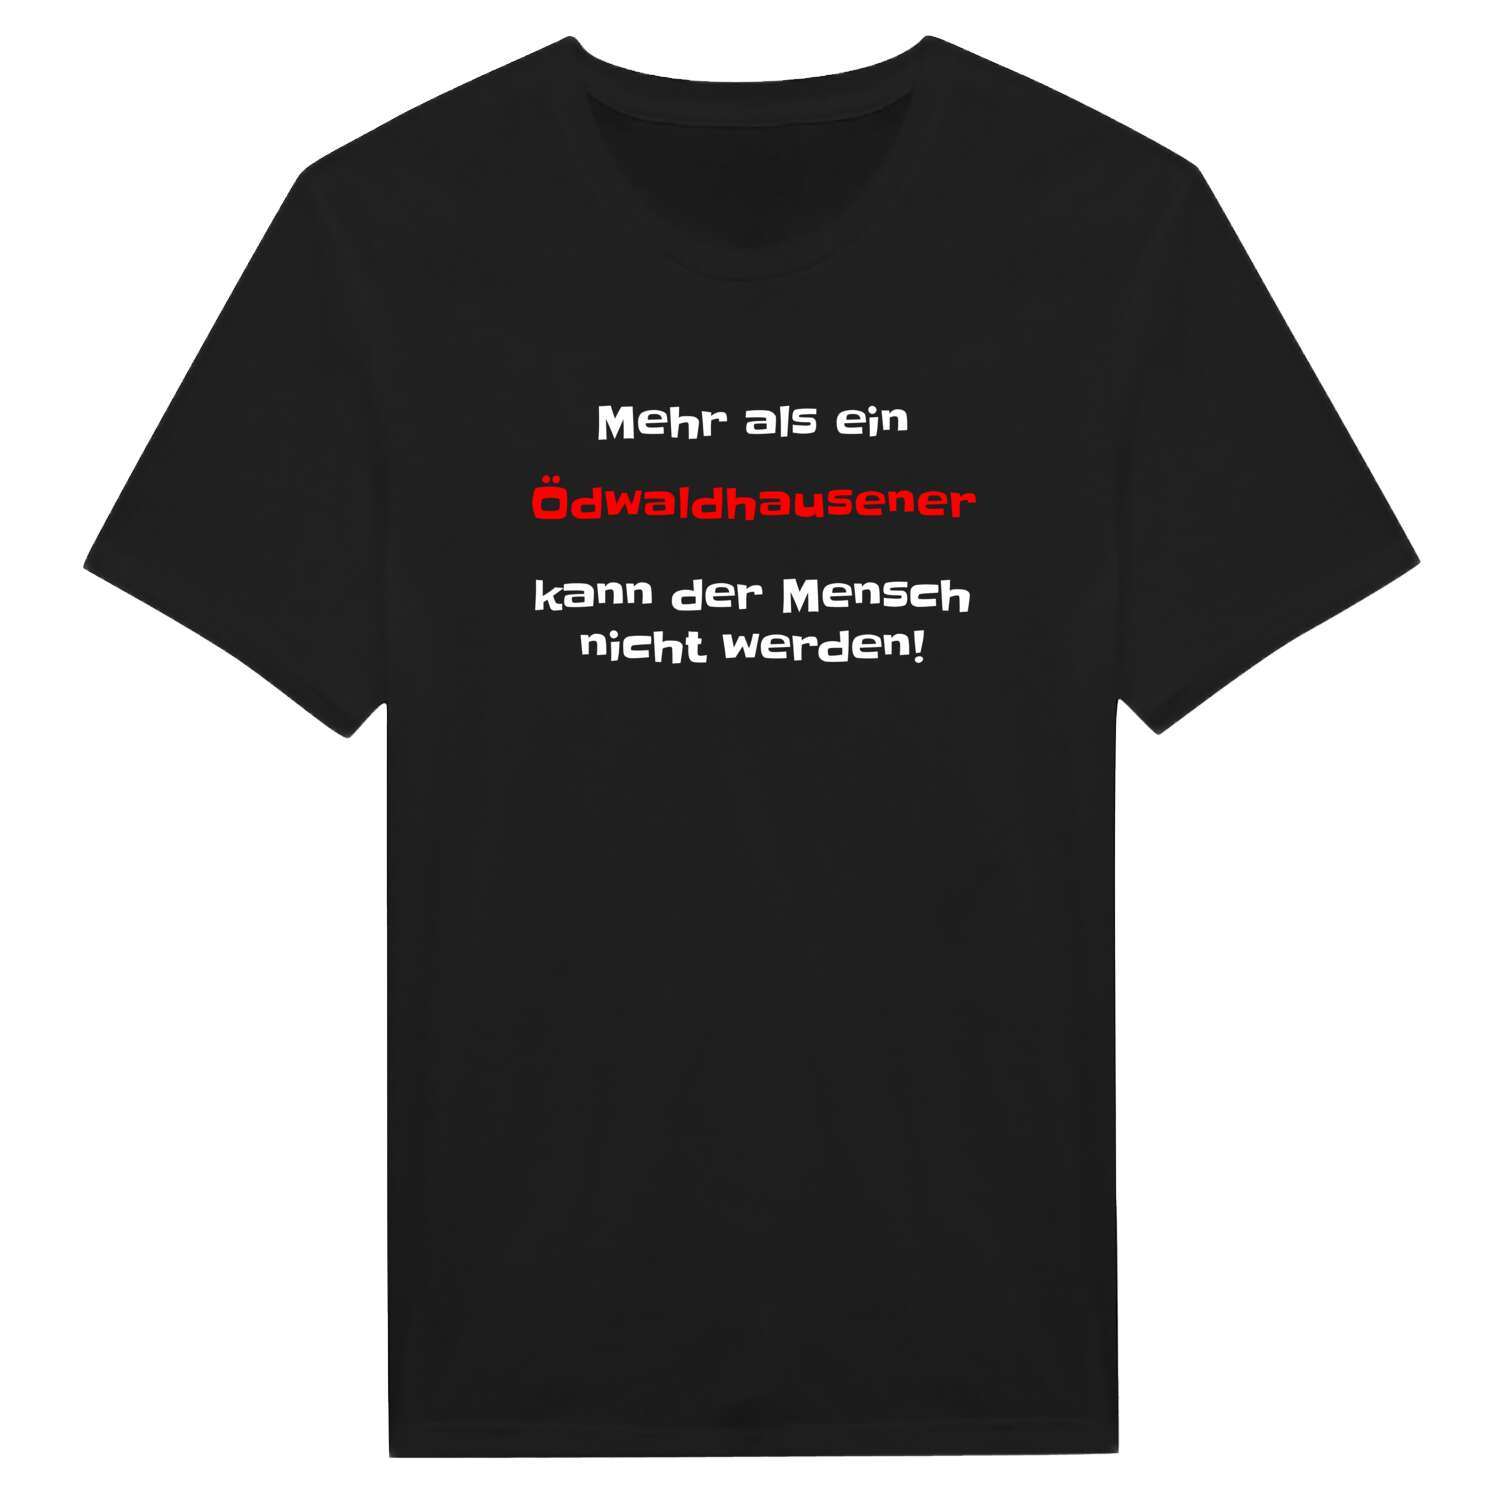 Ödwaldhausen T-Shirt »Mehr als ein«